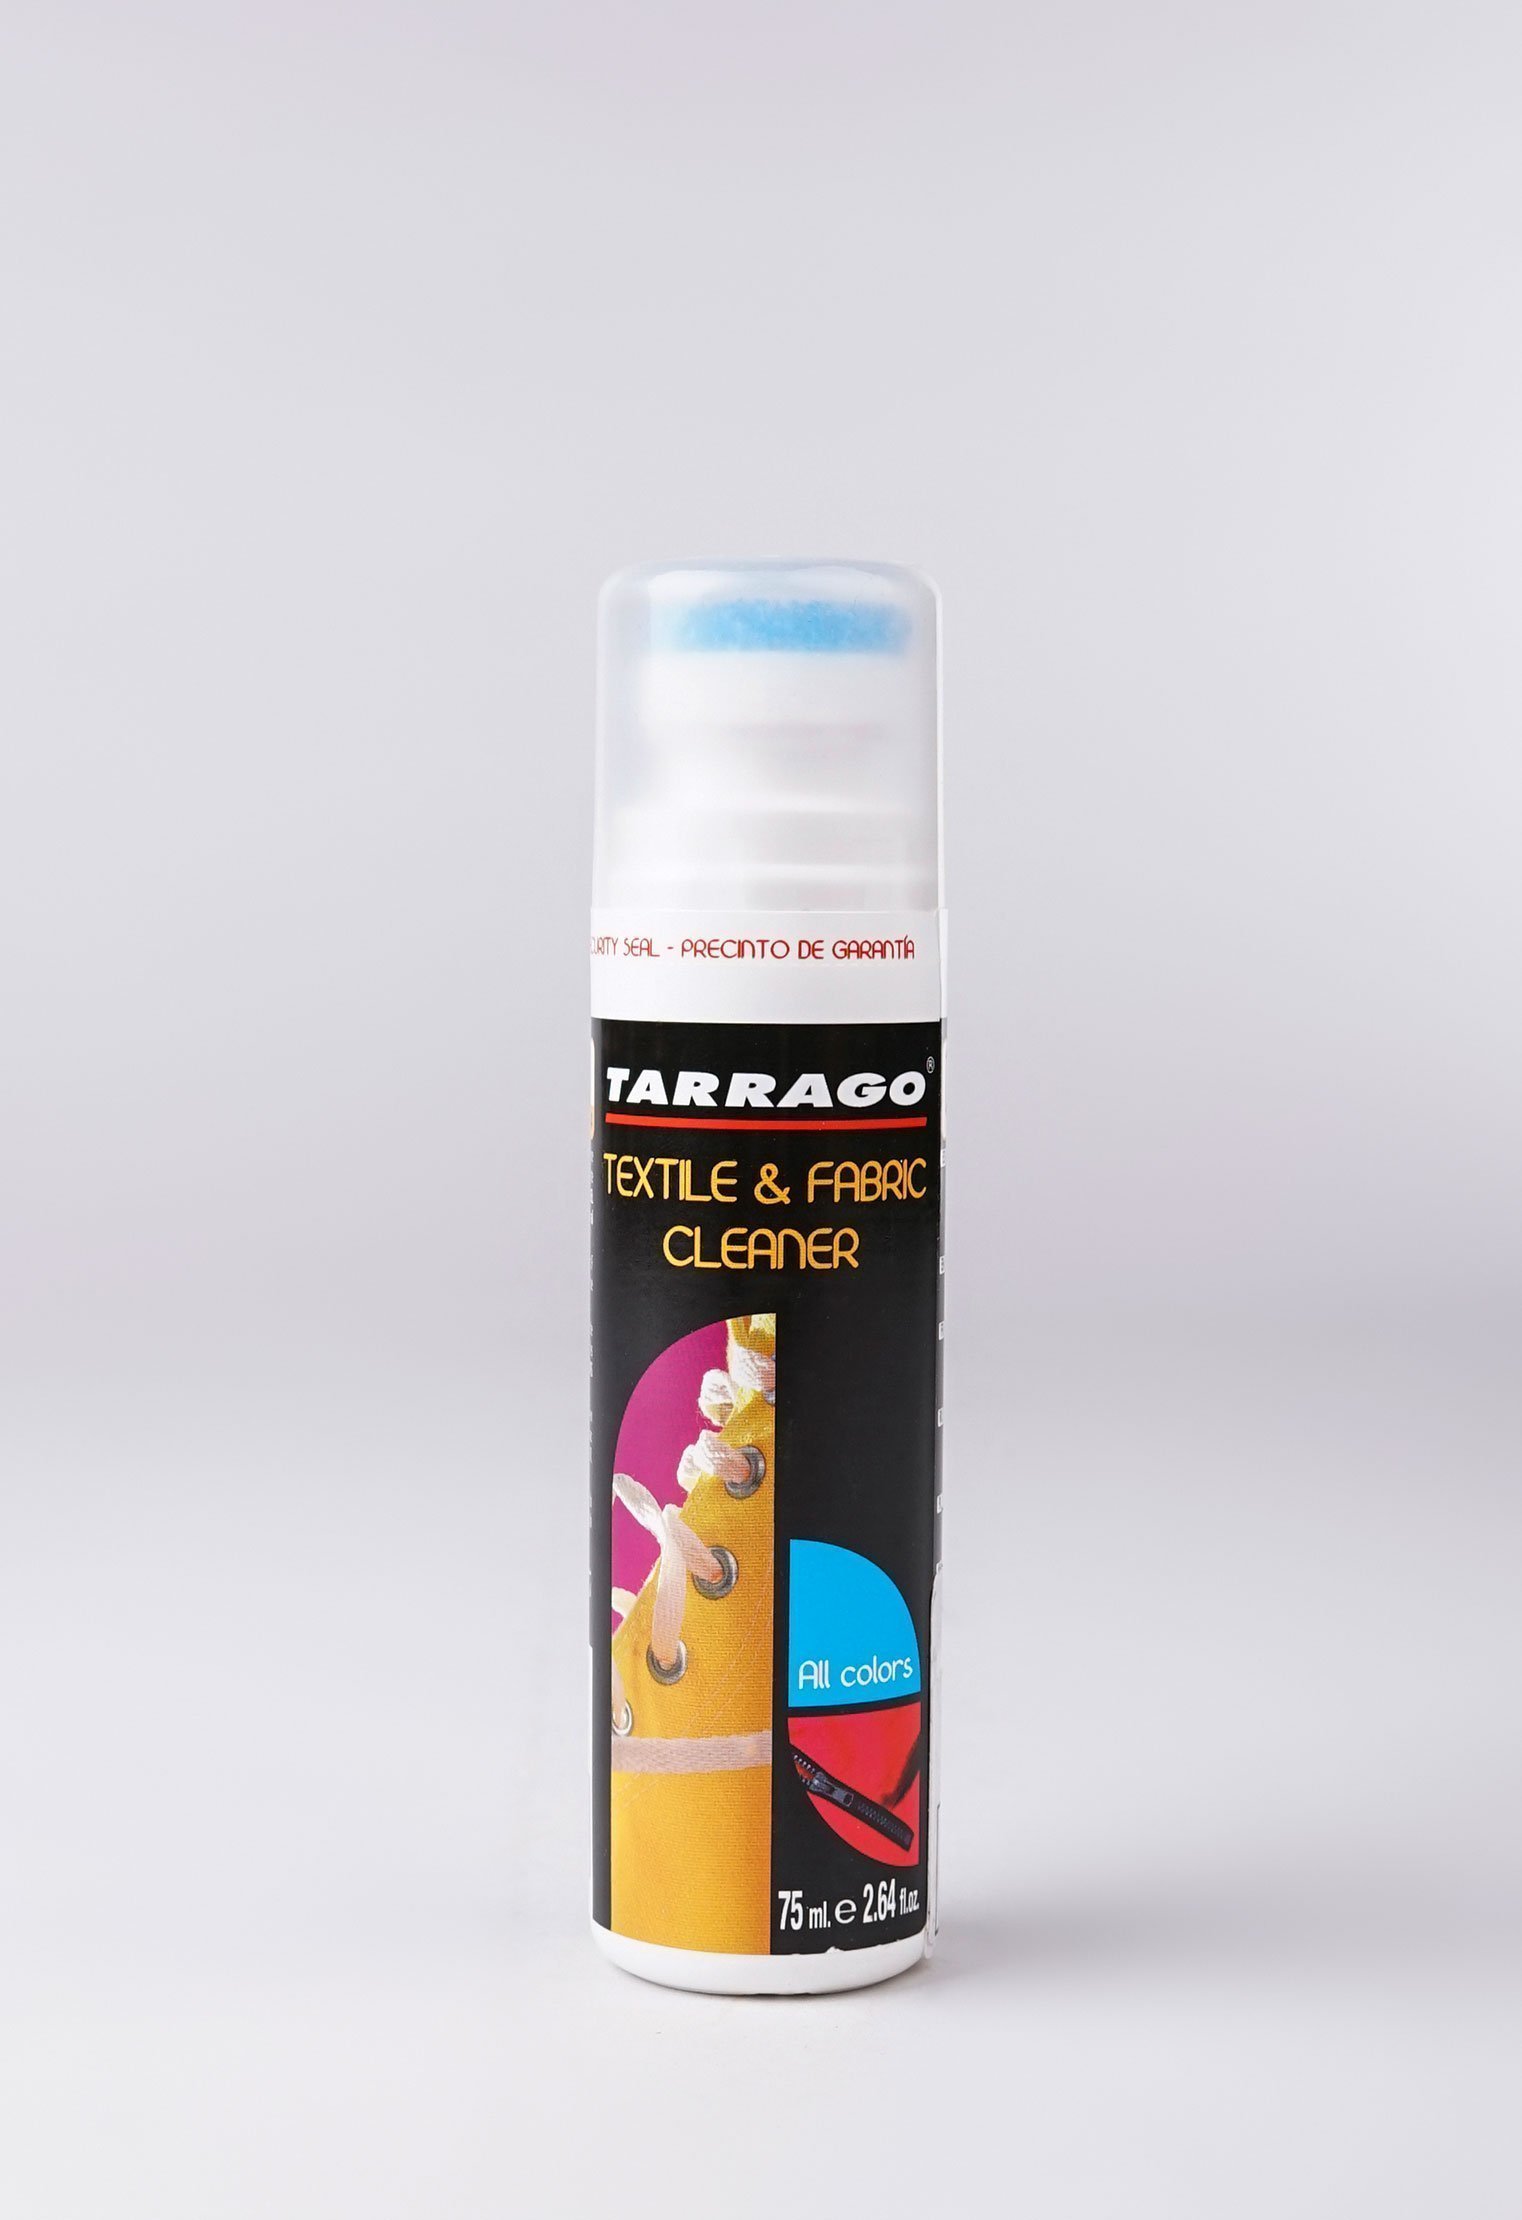 Шампуни и очистители 20-1057 TARRAGO - Очиститель для текстиля TEXTIL CLEANER, флакон, 75мл. шампуни и очистители 20 1205 tarrago очиститель от соли de salter флакон 75мл